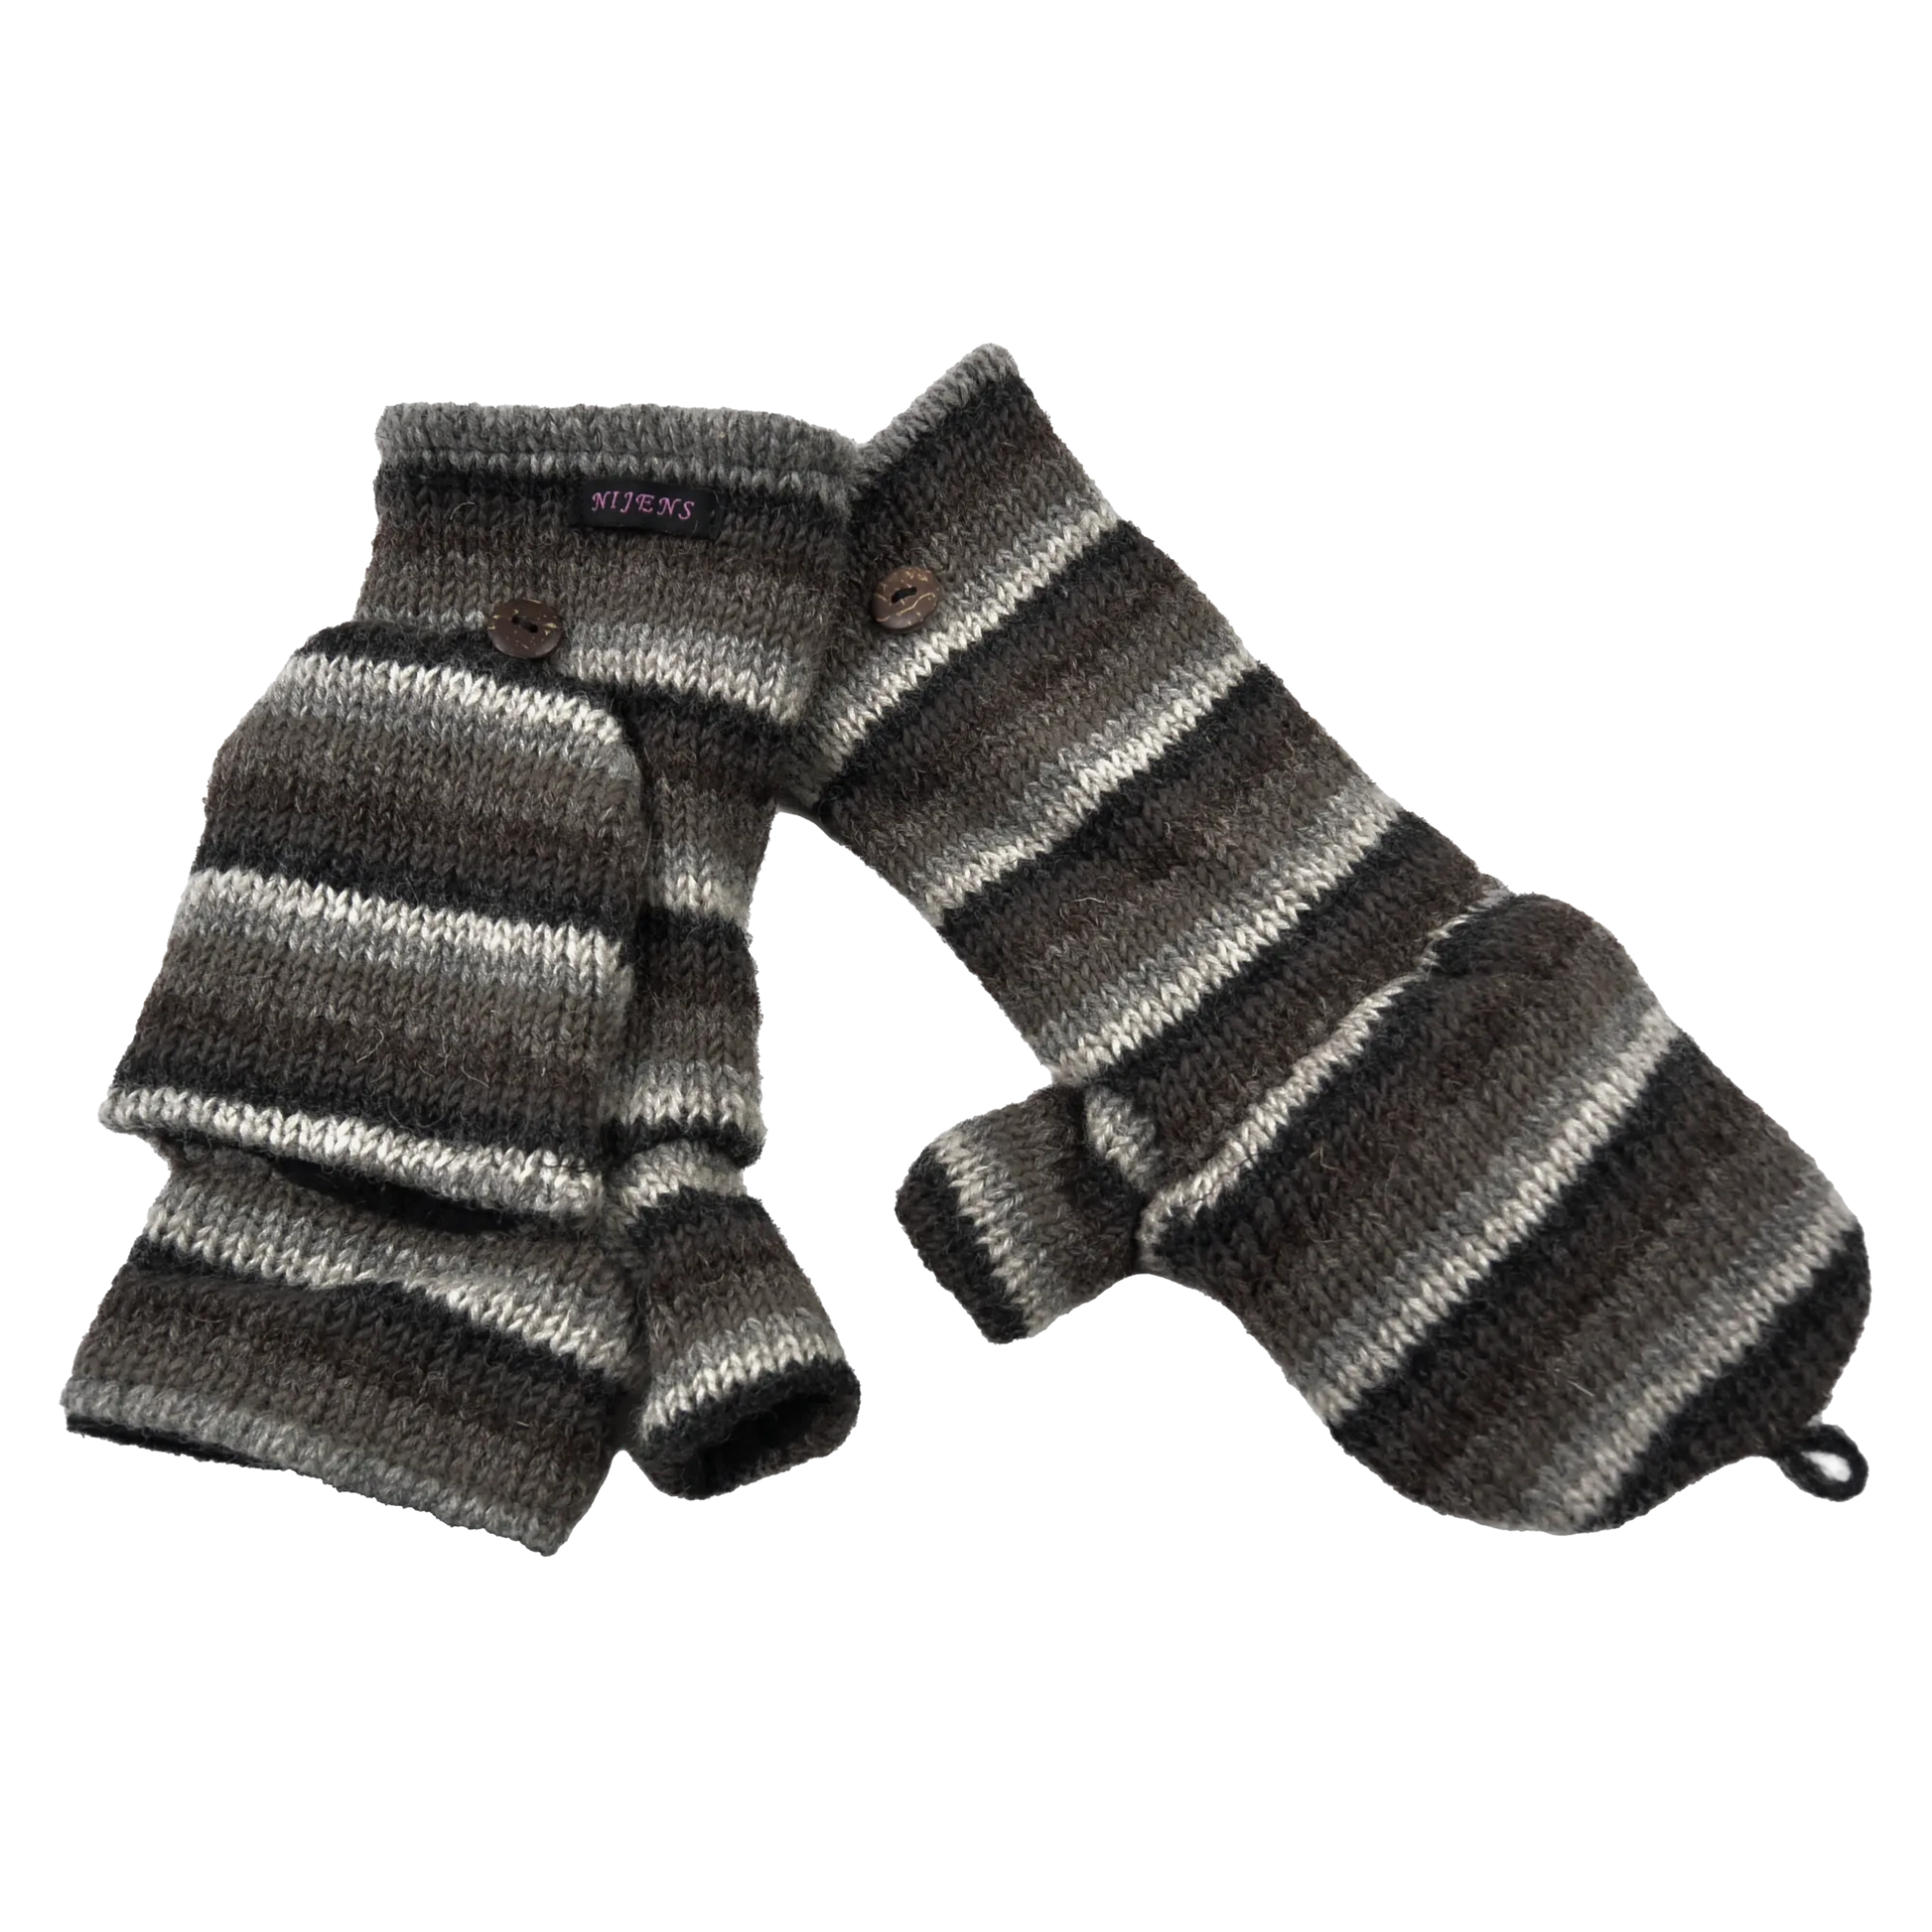 Fingerfreie Handschuhe aus Wolle gestreift in Braun, Grautöne mit Fingerkappe.